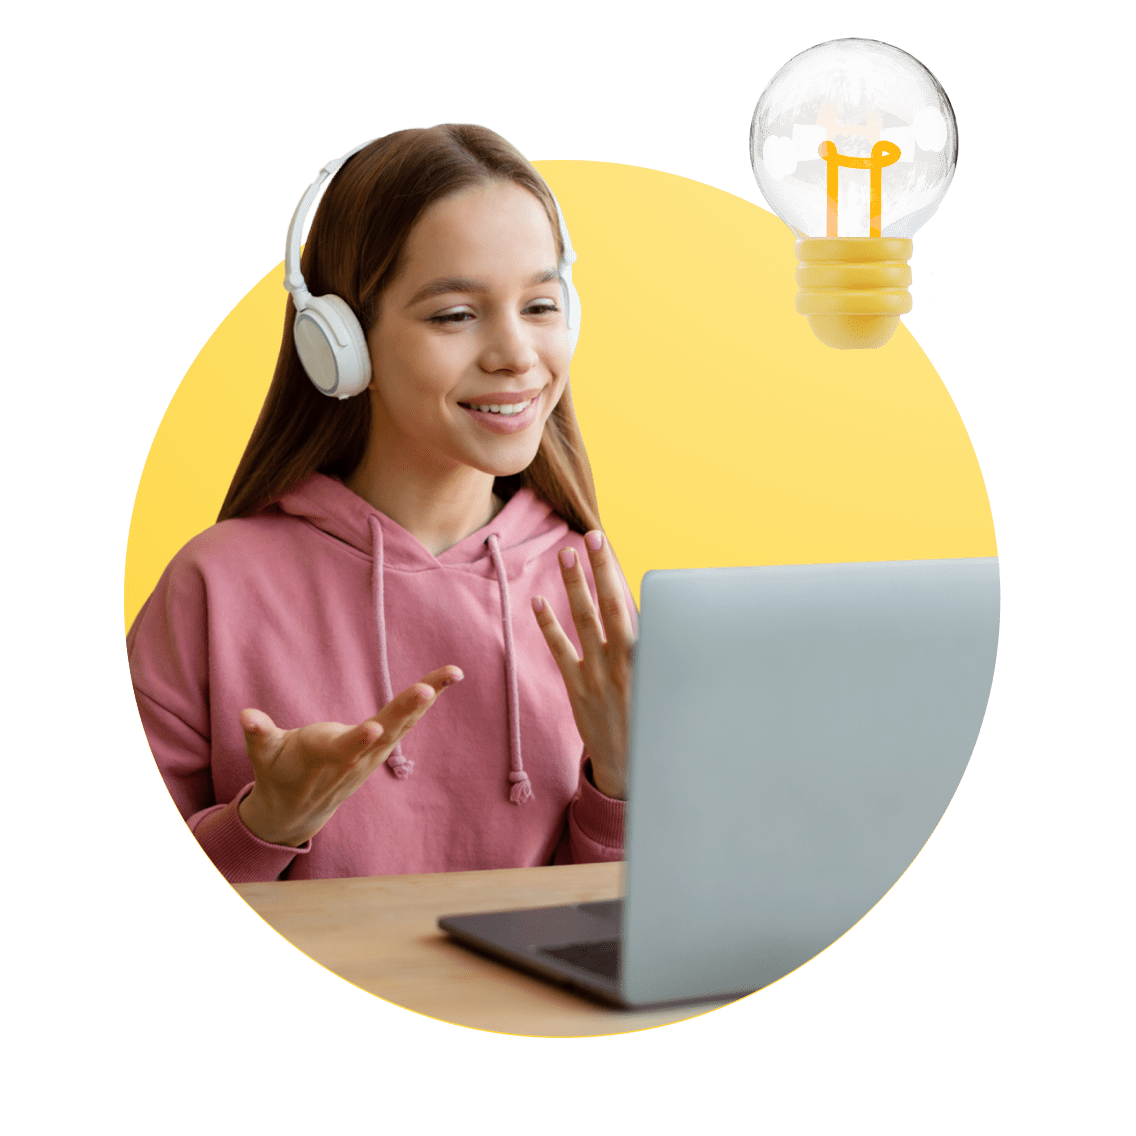 Virginia Online Schools image 8 (name 4 Young Girl Desk Headphones Light)